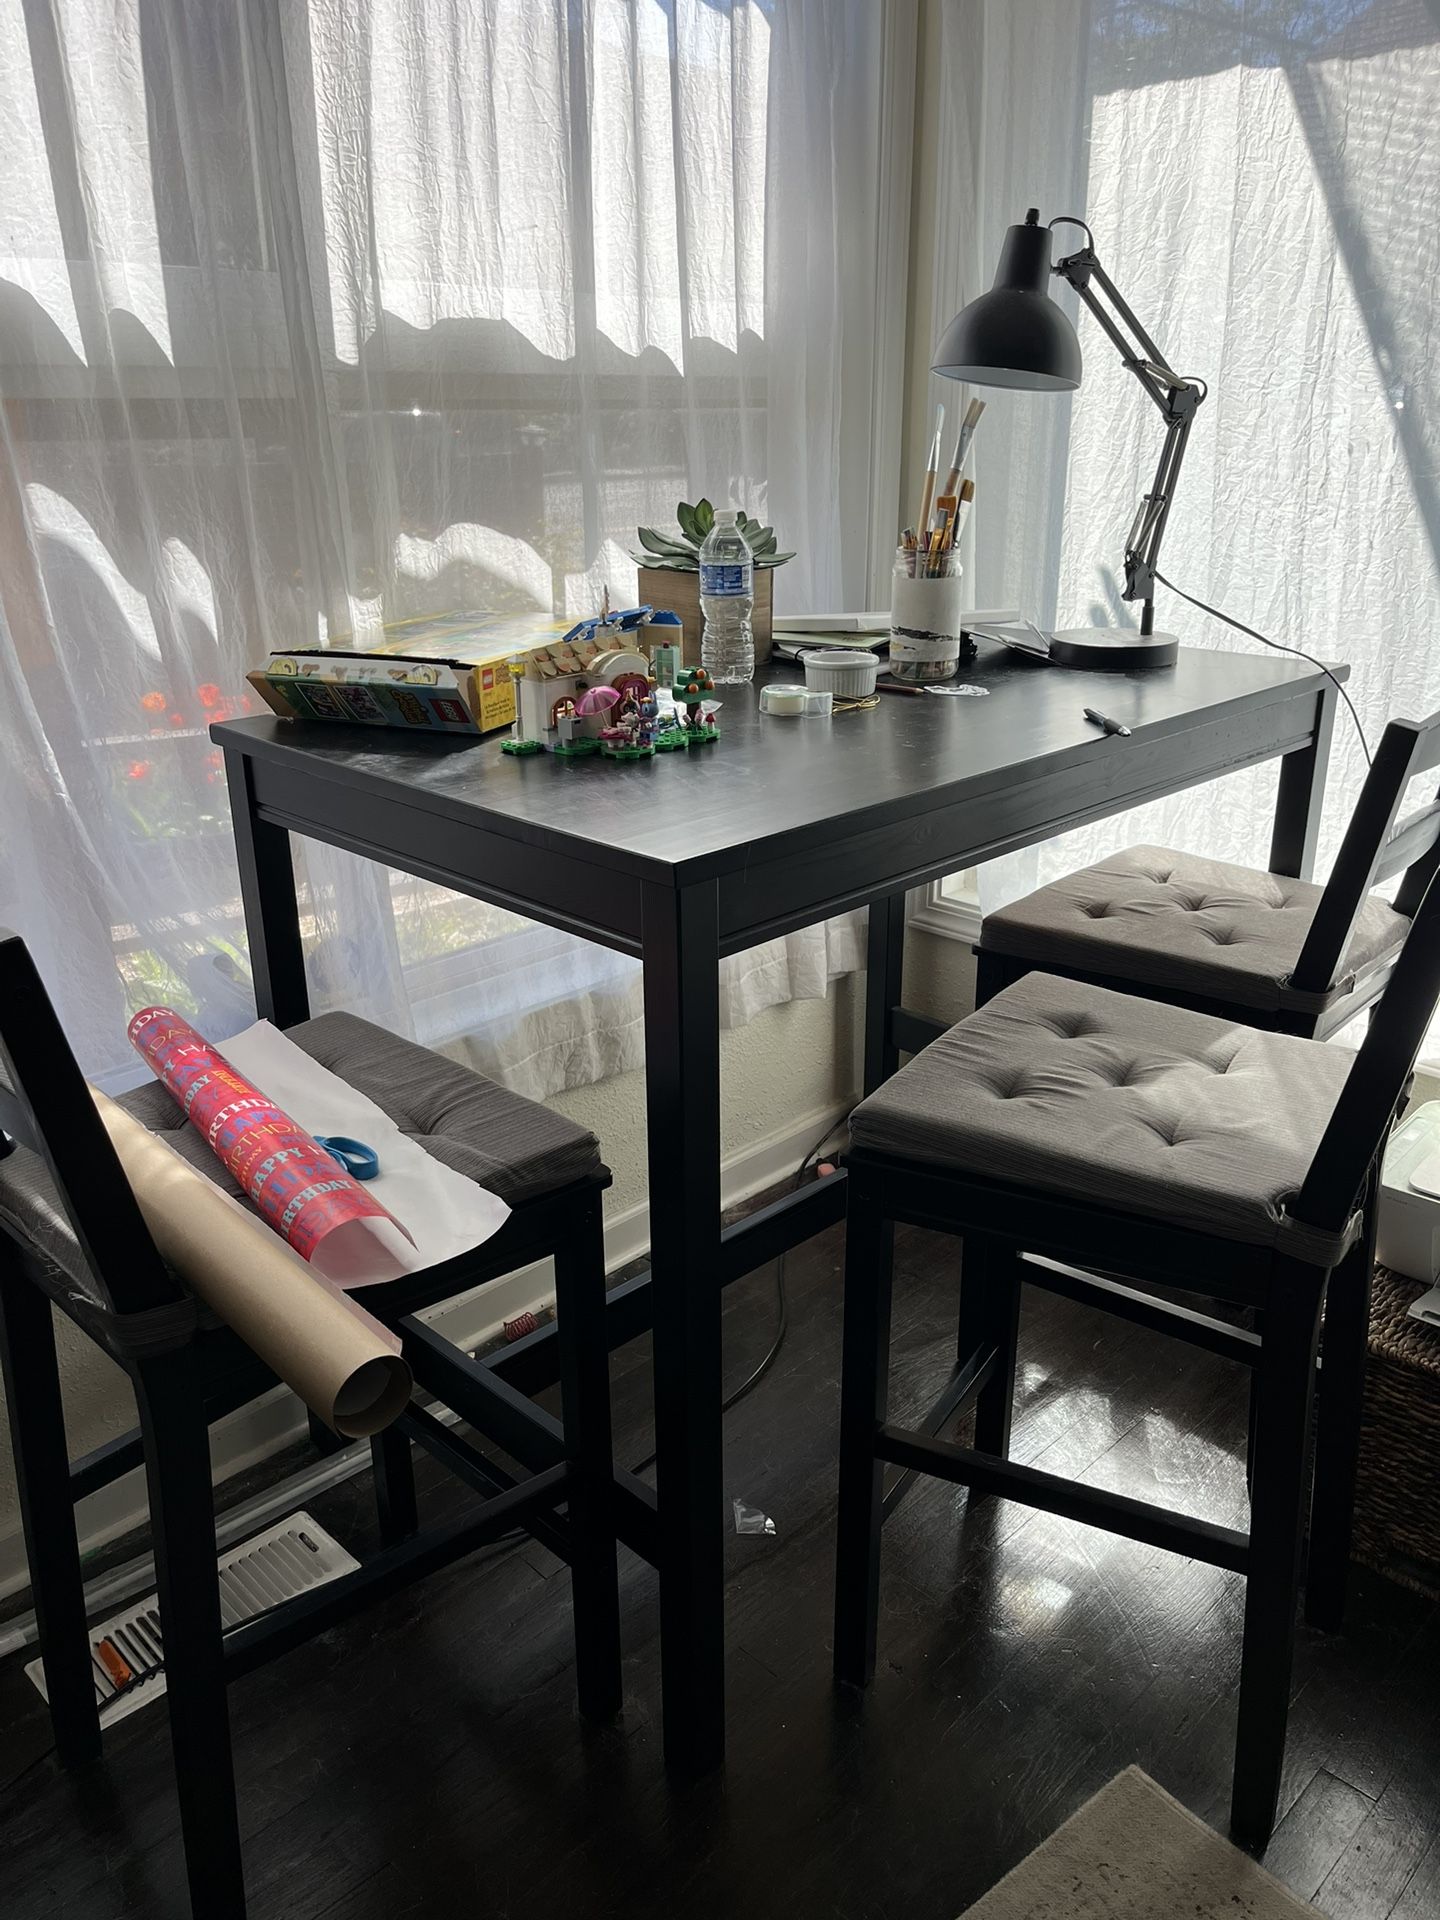 IKEA Table & 4 barstools